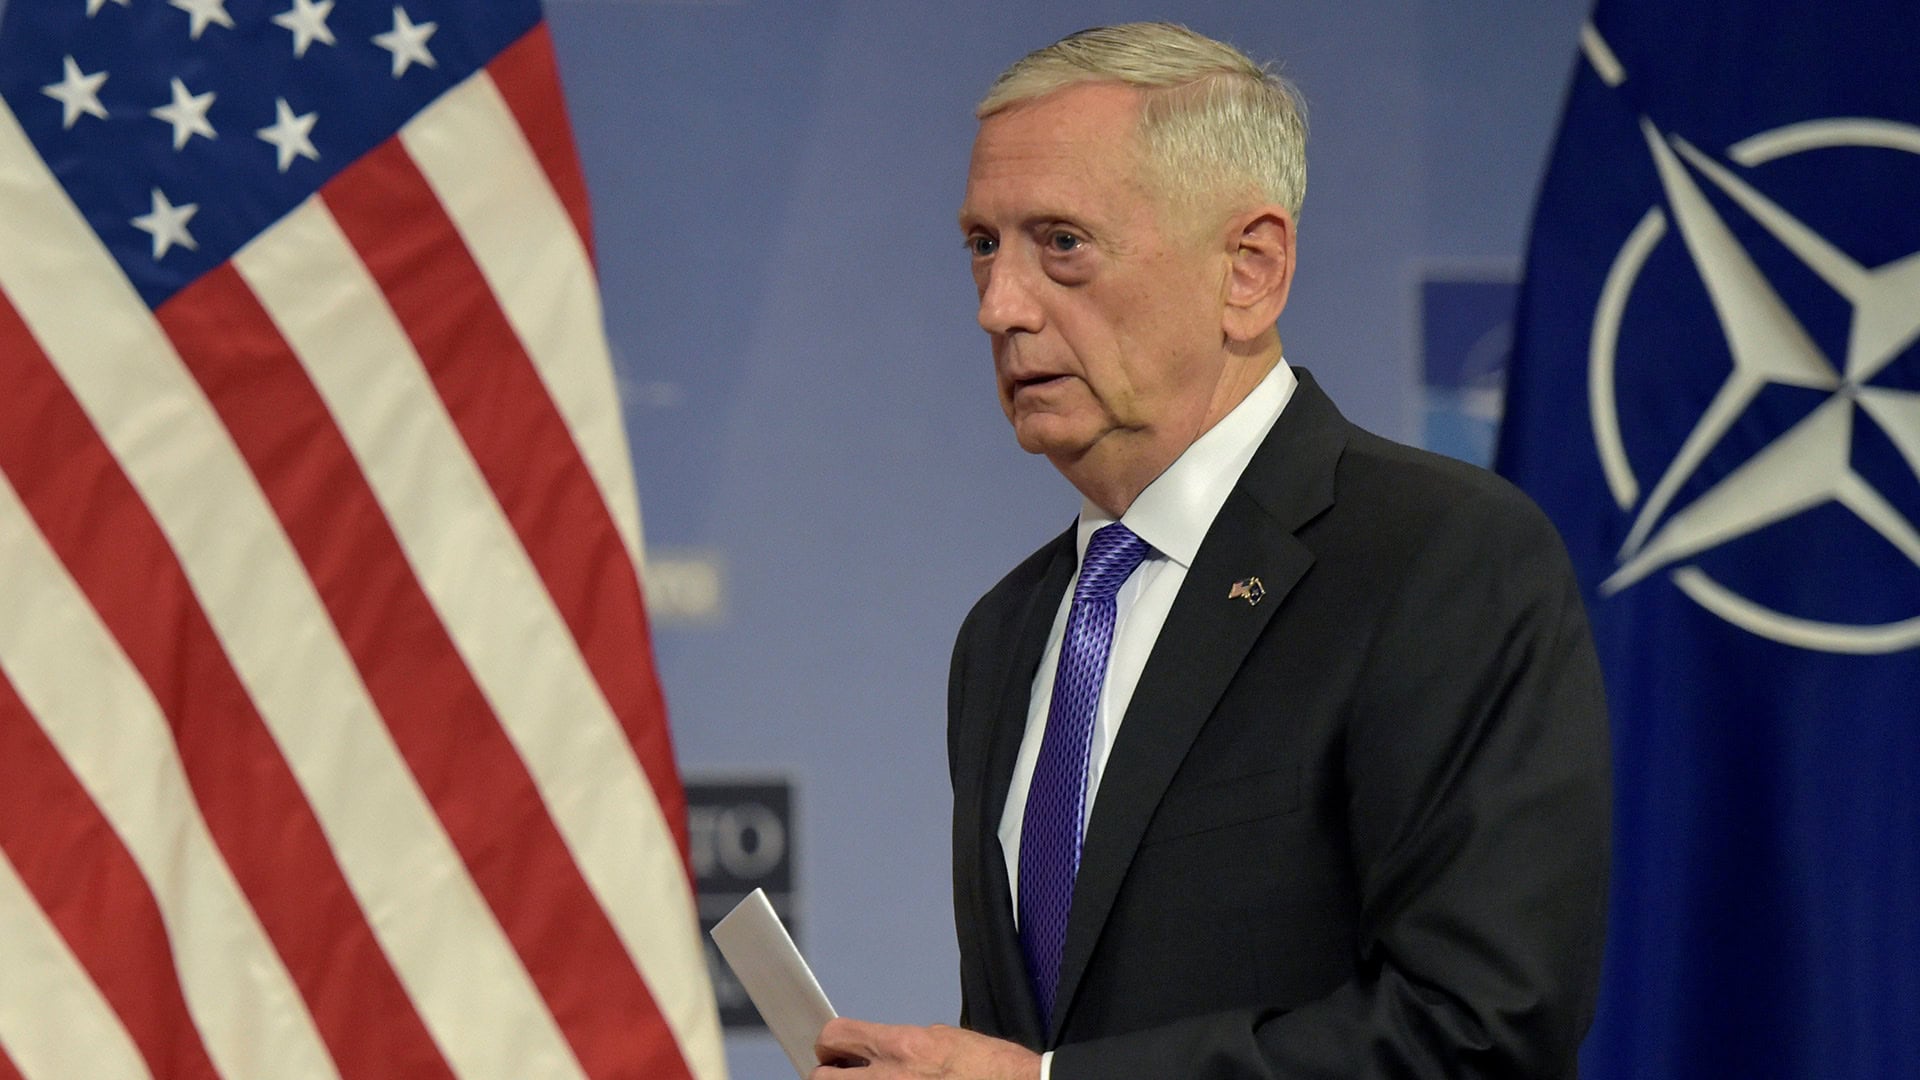 Estados Unidos ordena el envío de nuevas tropas a Afganistán